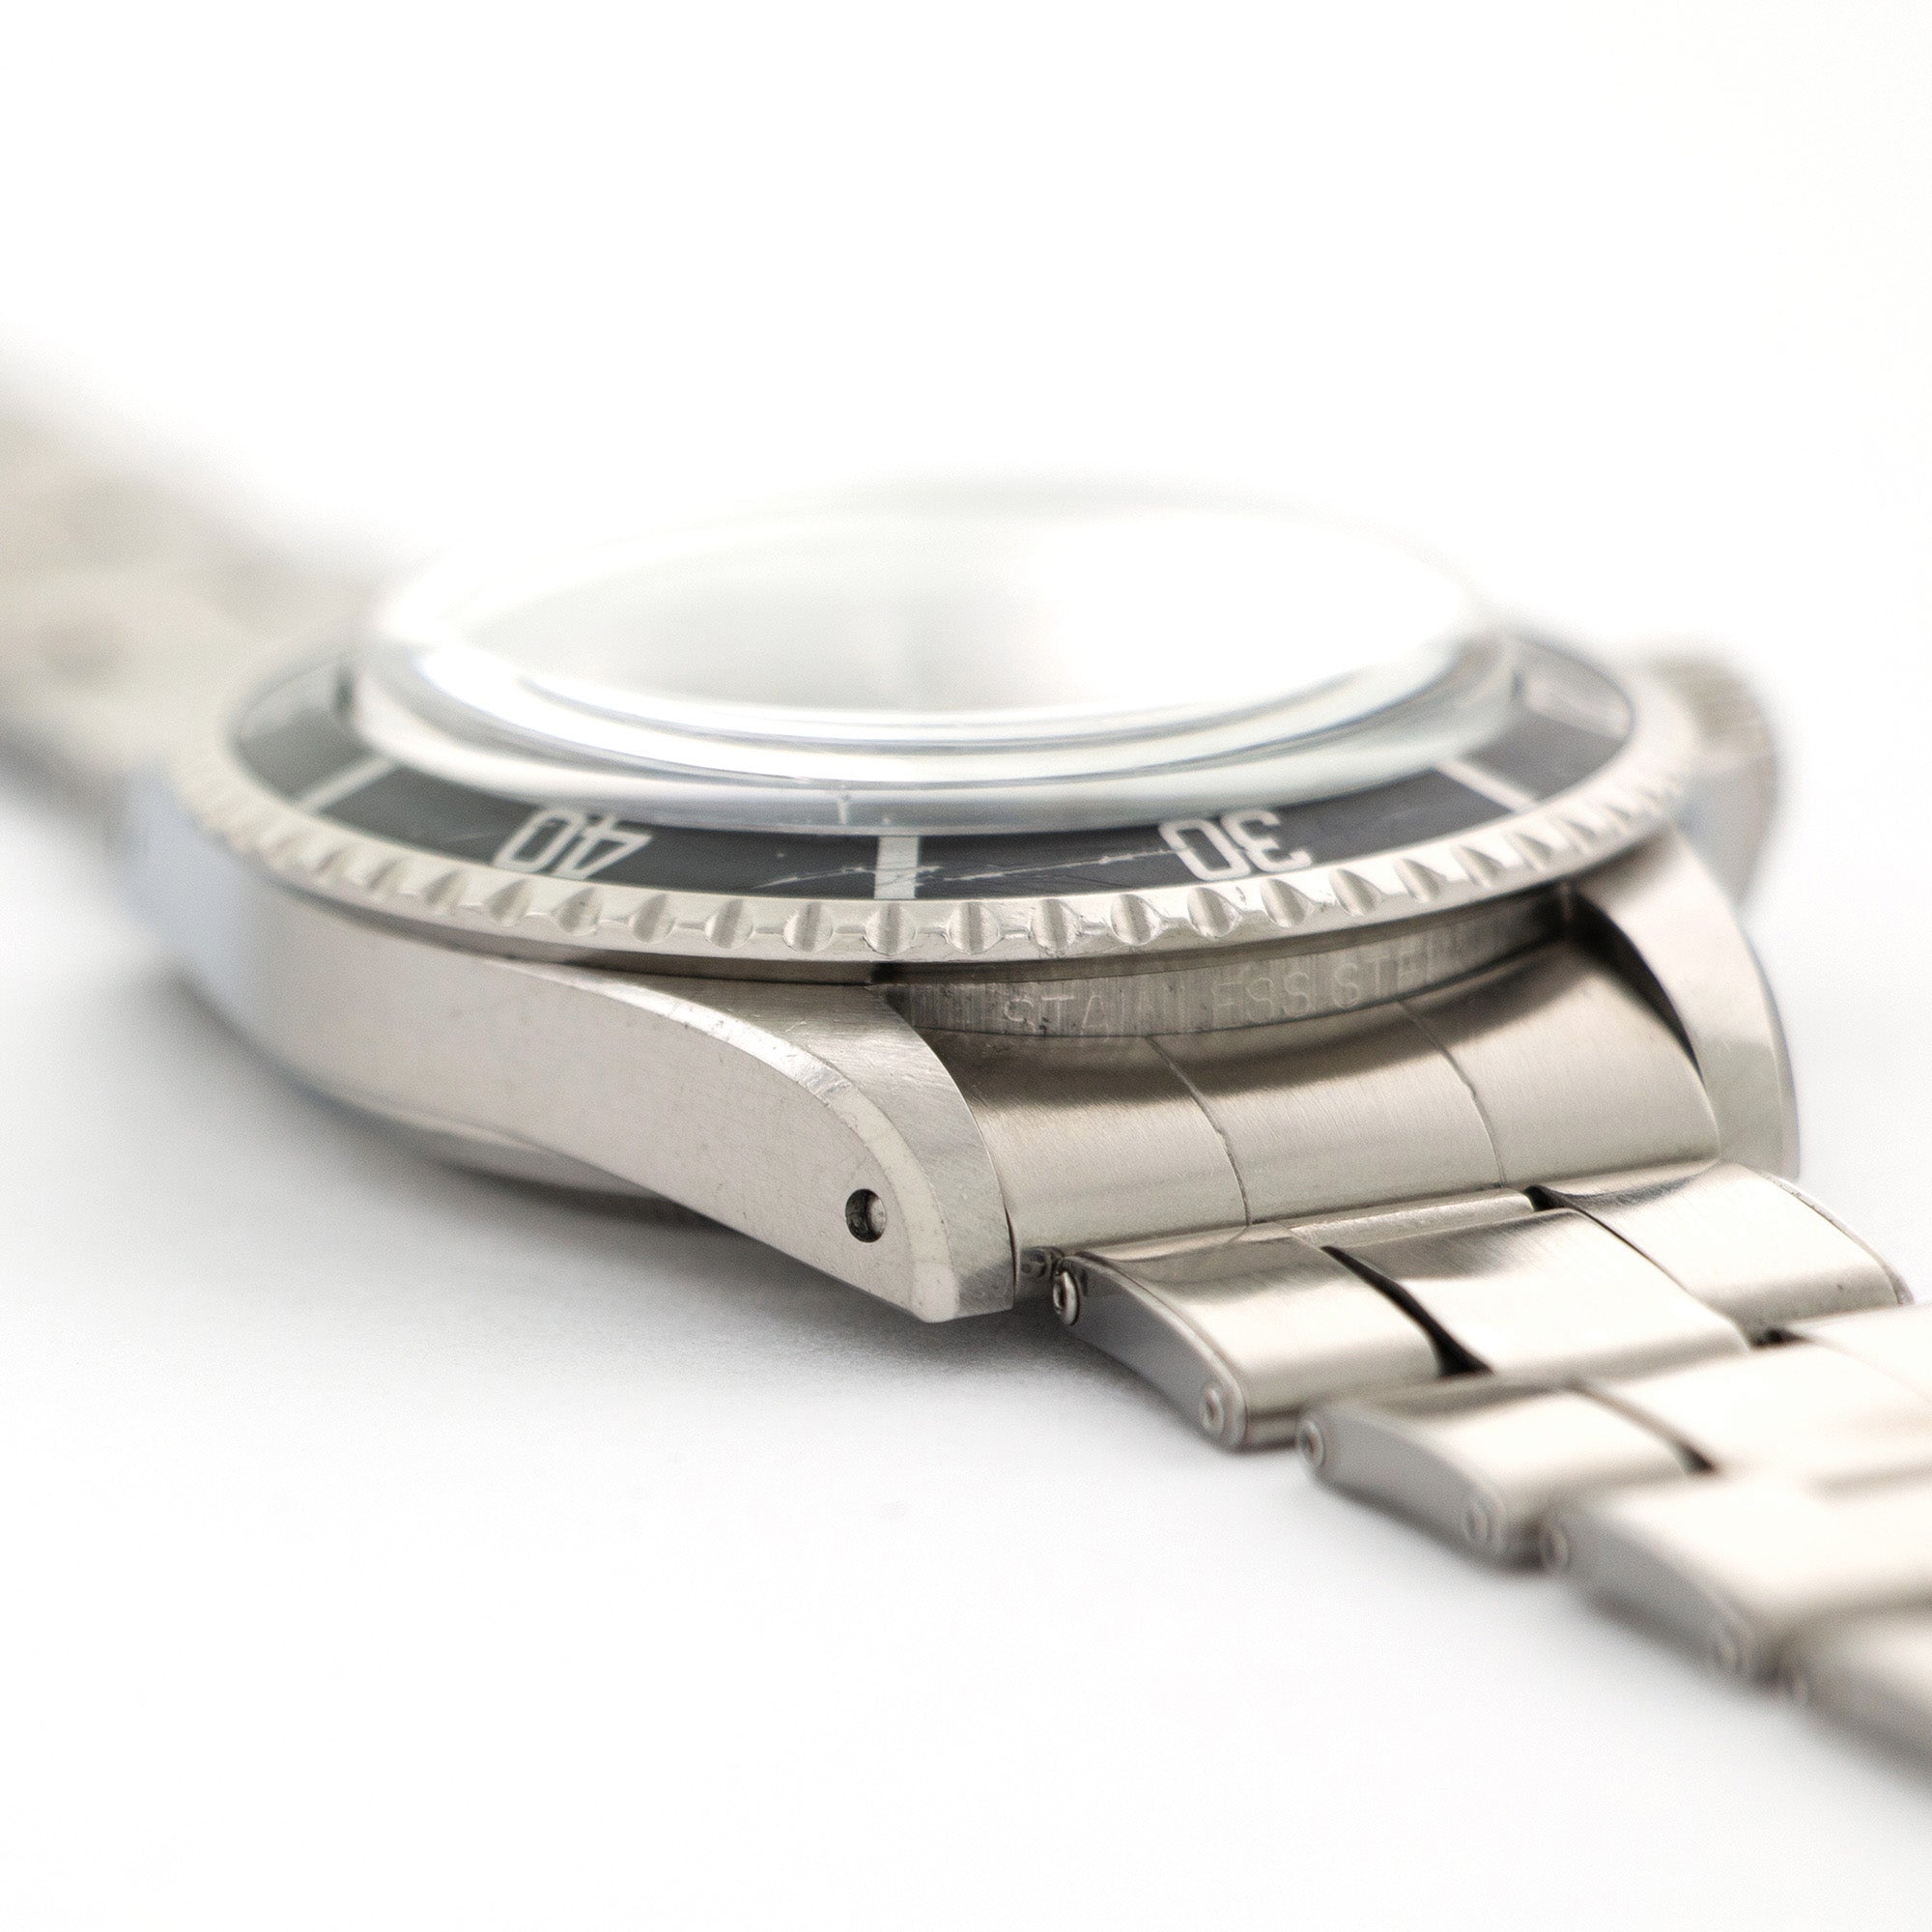 Rolex - Rolex Submariner 4-Line Gilt Dial Watch Ref. 5512 - The Keystone Watches